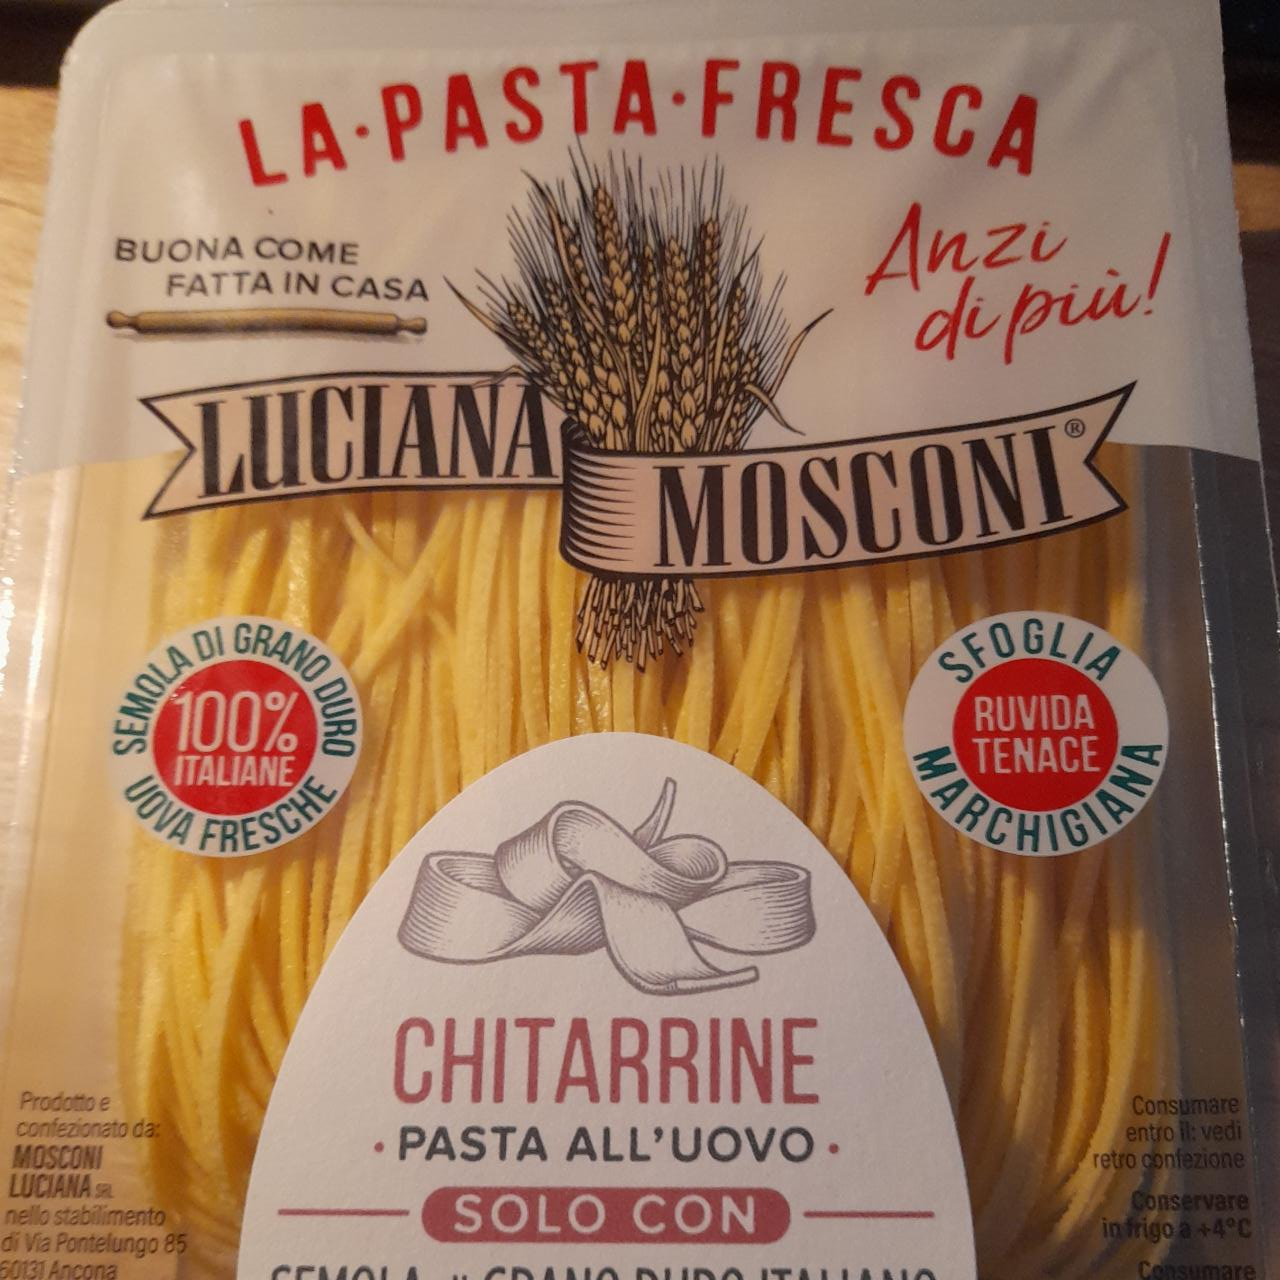 Fotografie - Chitarrine / La pasta fresca Luciana mosconi